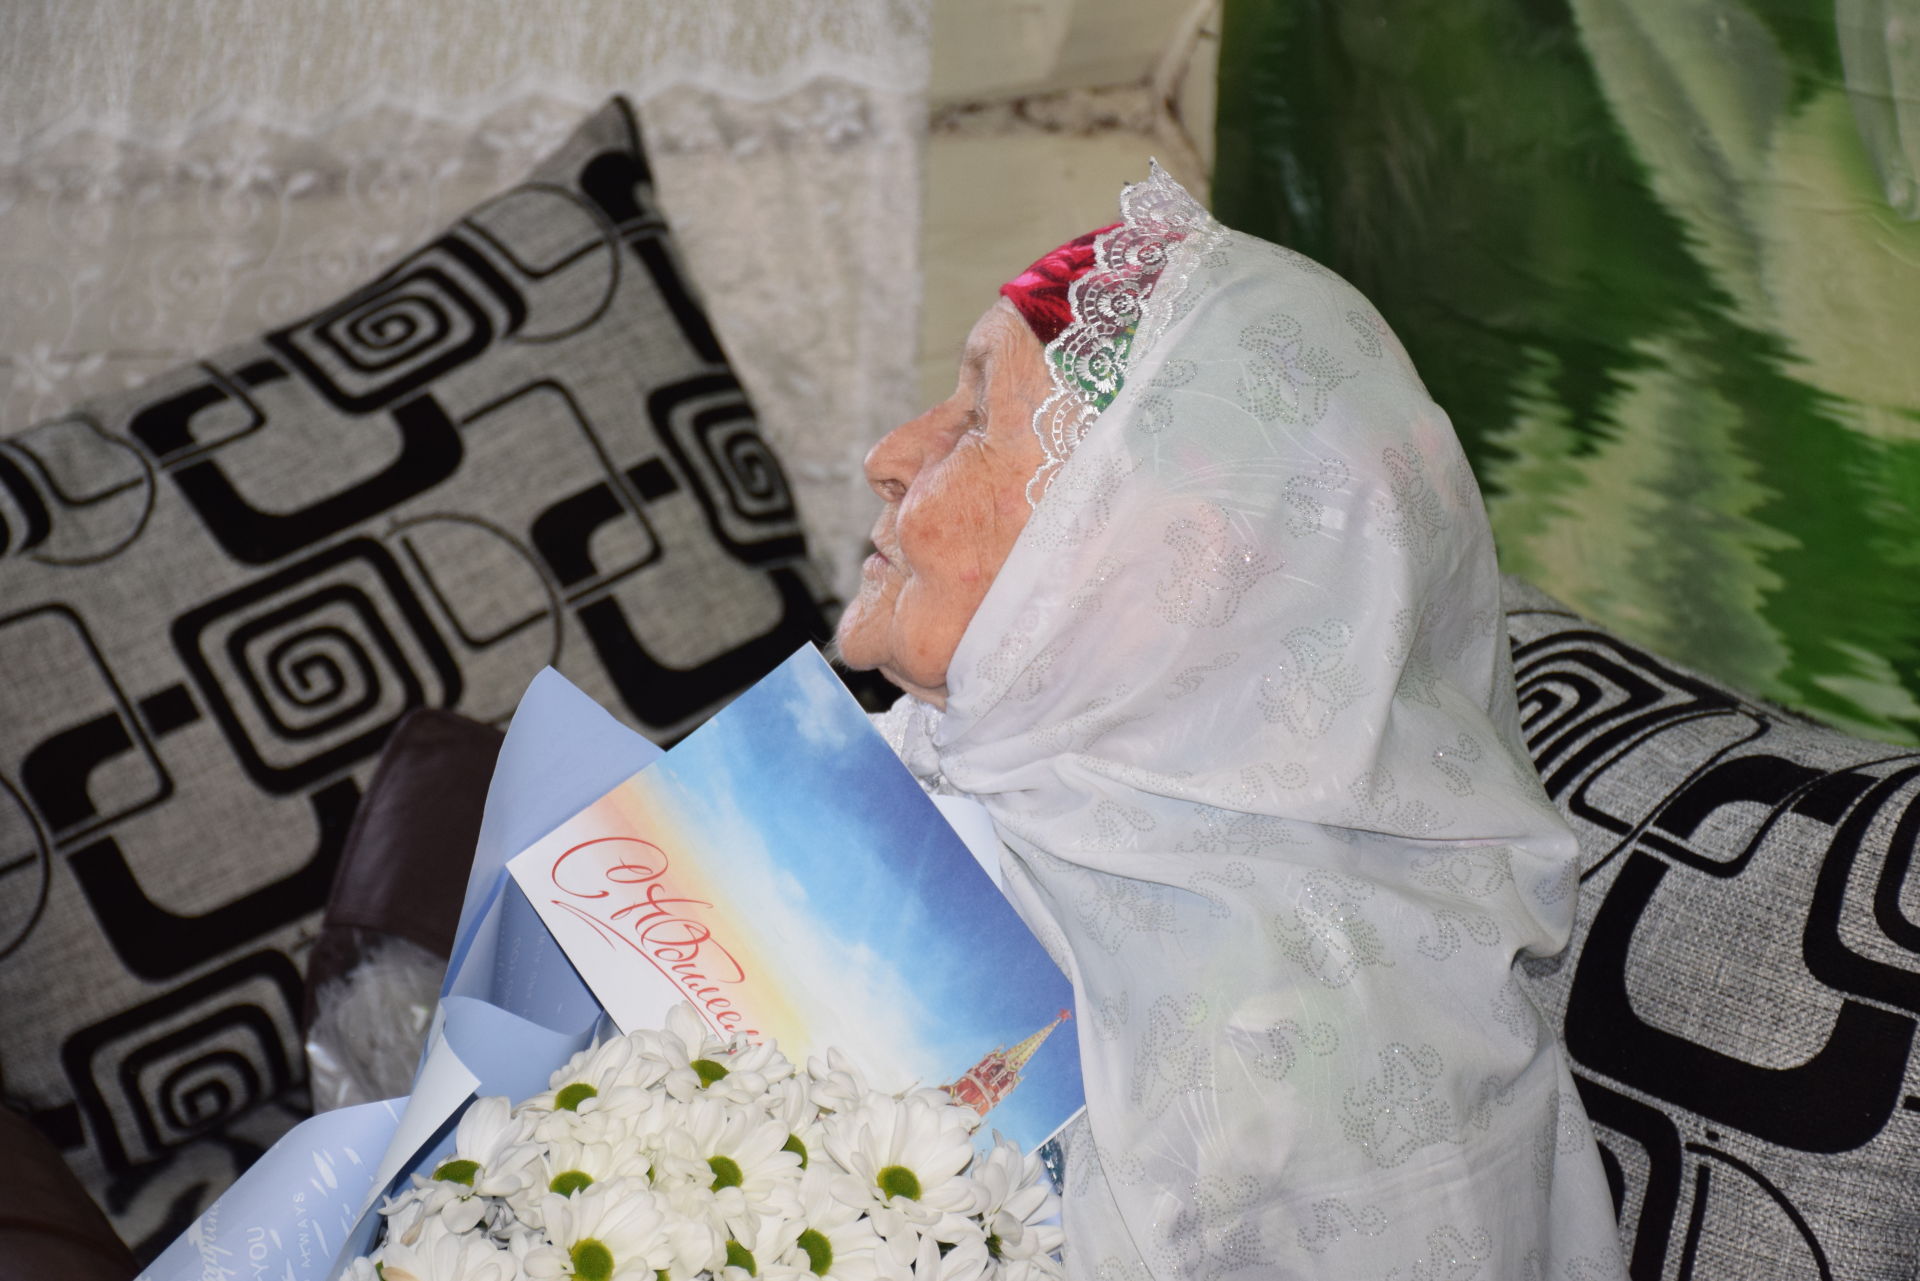 Самая возрастная жительница Кичкальни отмечает 95-летие